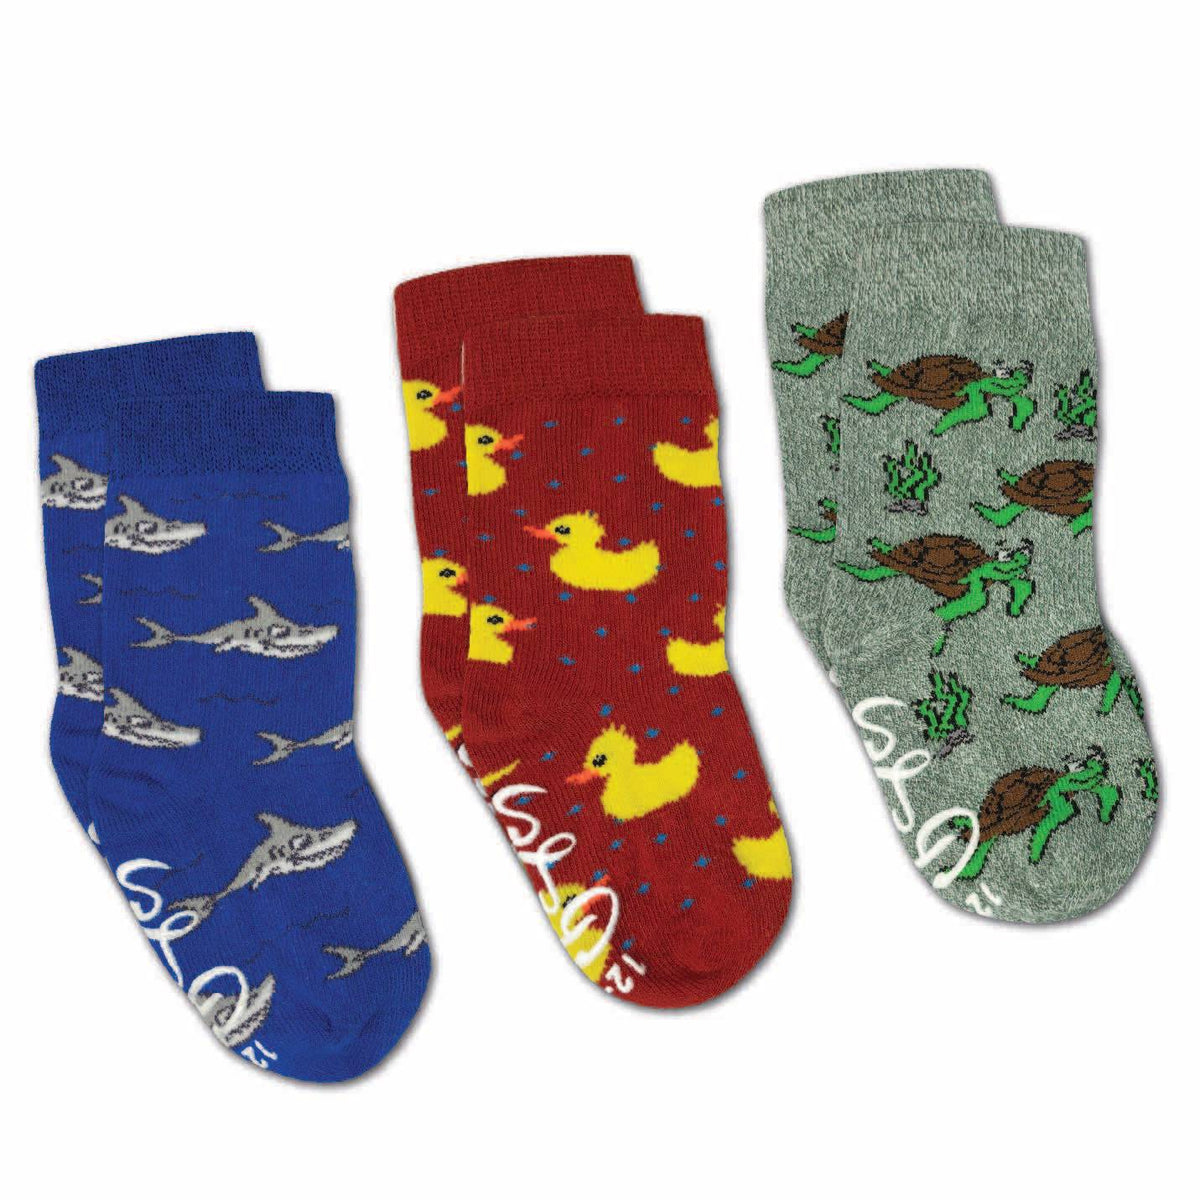 Rubber Ducks, Sharks and Turtles Kids Socks